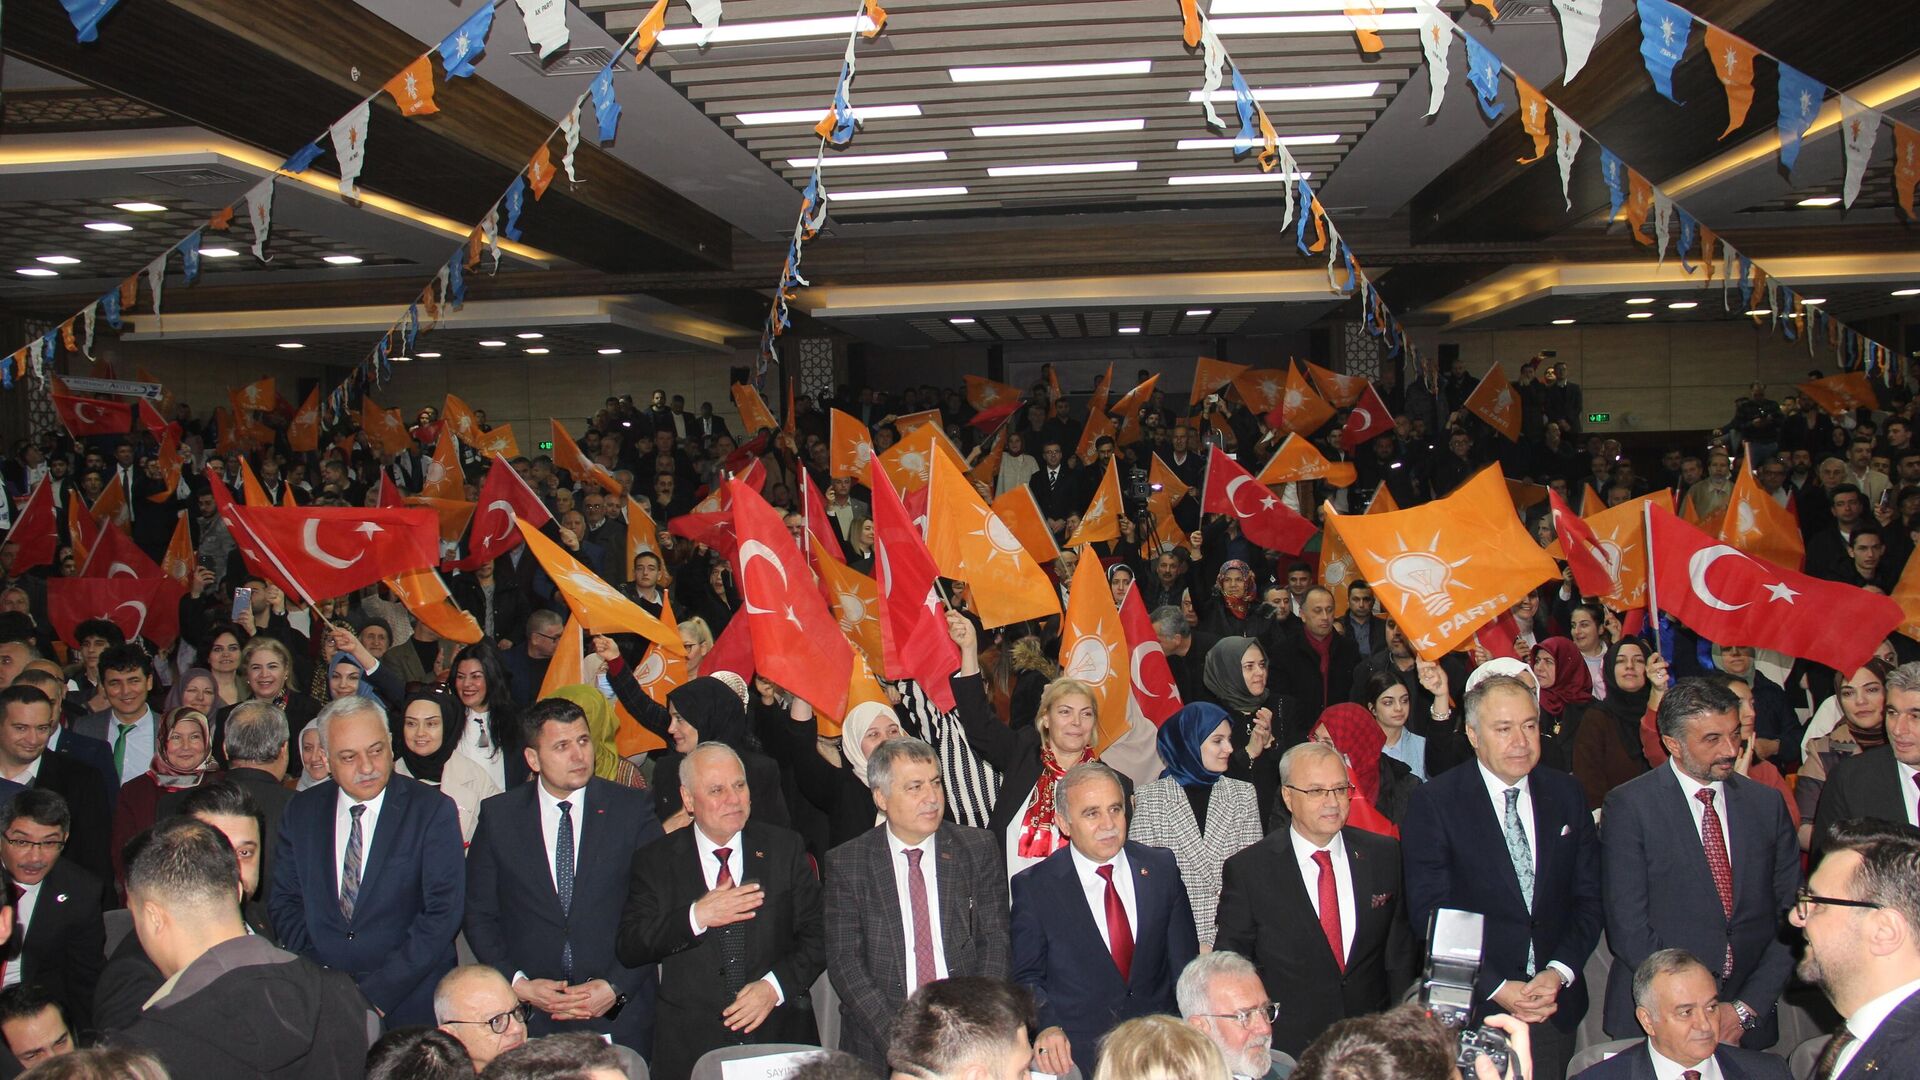 Manisa'da AK Parti İl Teşkilatı tarafından belediye başkan adaylarının tanıtımı yapıldı. Tanıtımda AK Parti'nin 11 ilçe belediye başkan adayı ile MHP'nin 6 ilçe ve Büyükşehir Belediye Başkan adayları salonu dolduran coşkulu kalabalık tarafından uzun süre alkışlandı. - Sputnik Türkiye, 1920, 10.02.2024